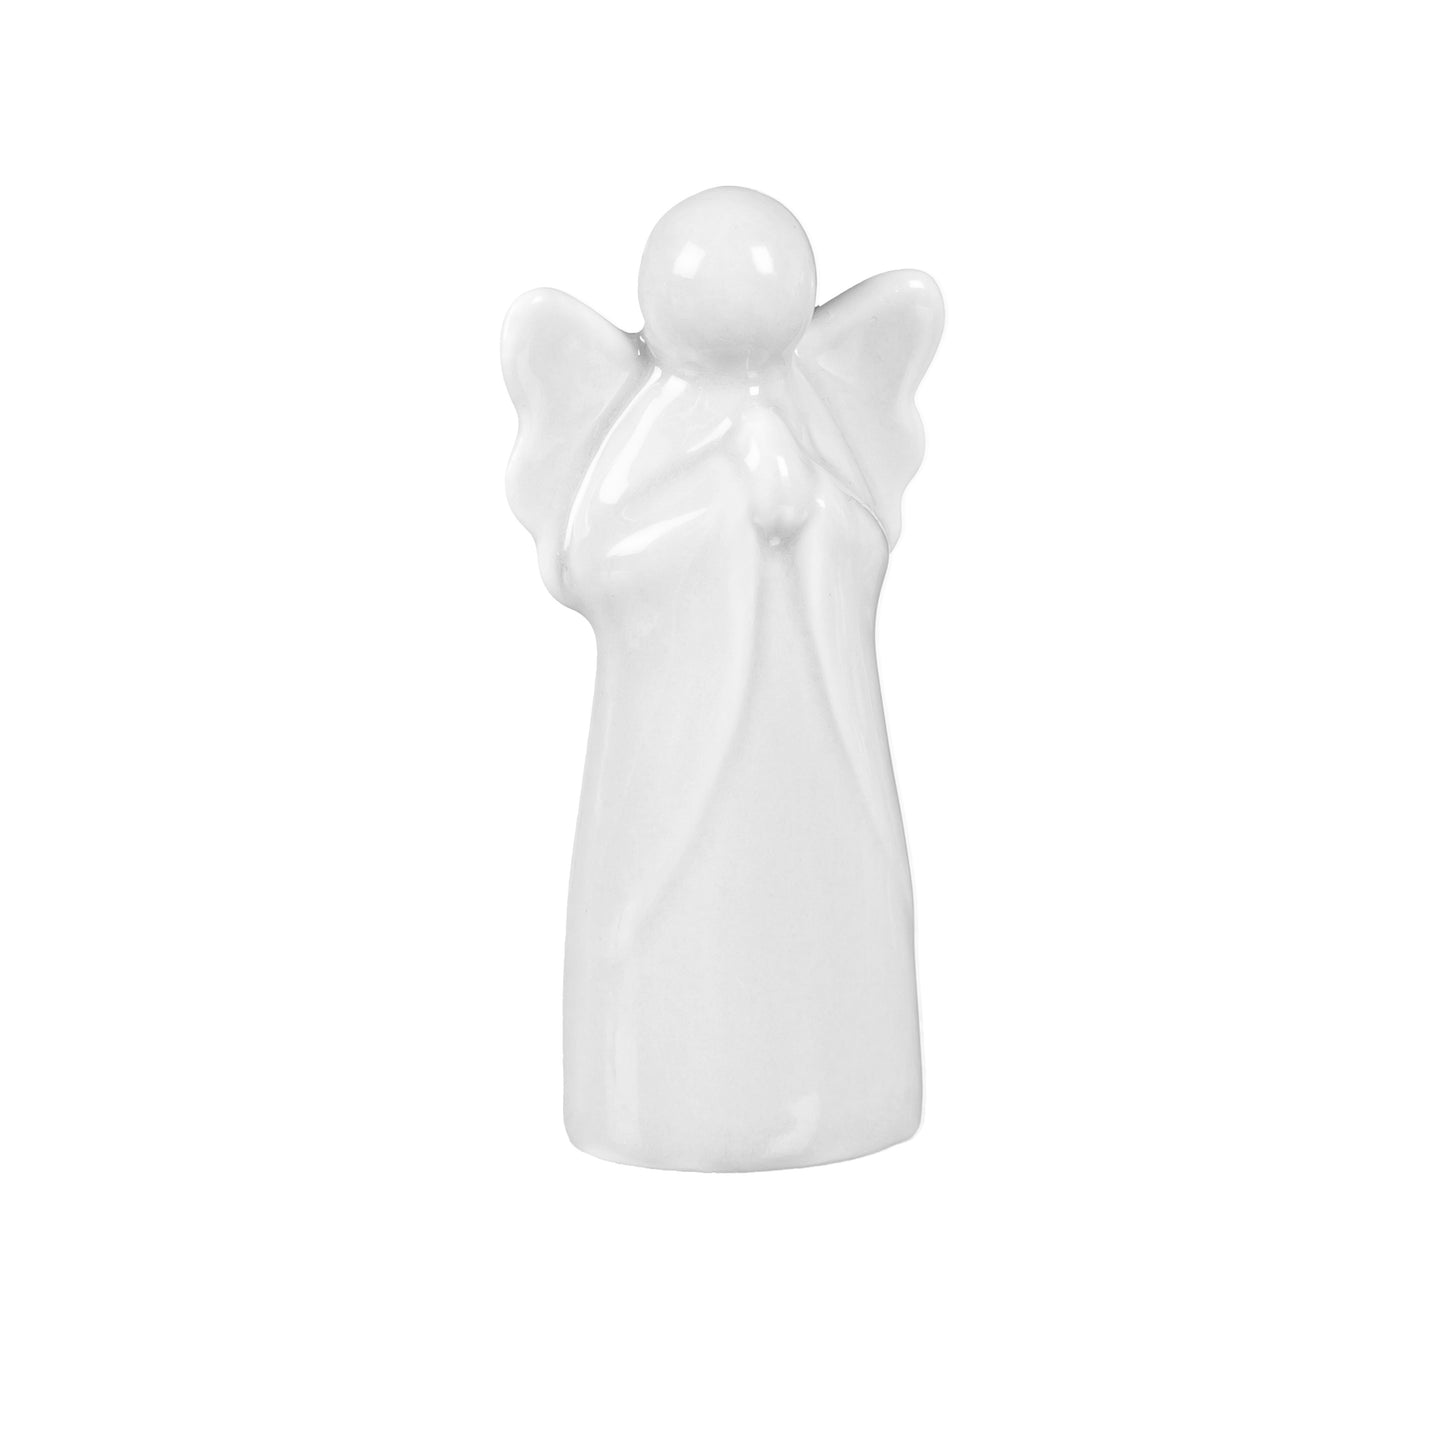 3" Ceramic Angel